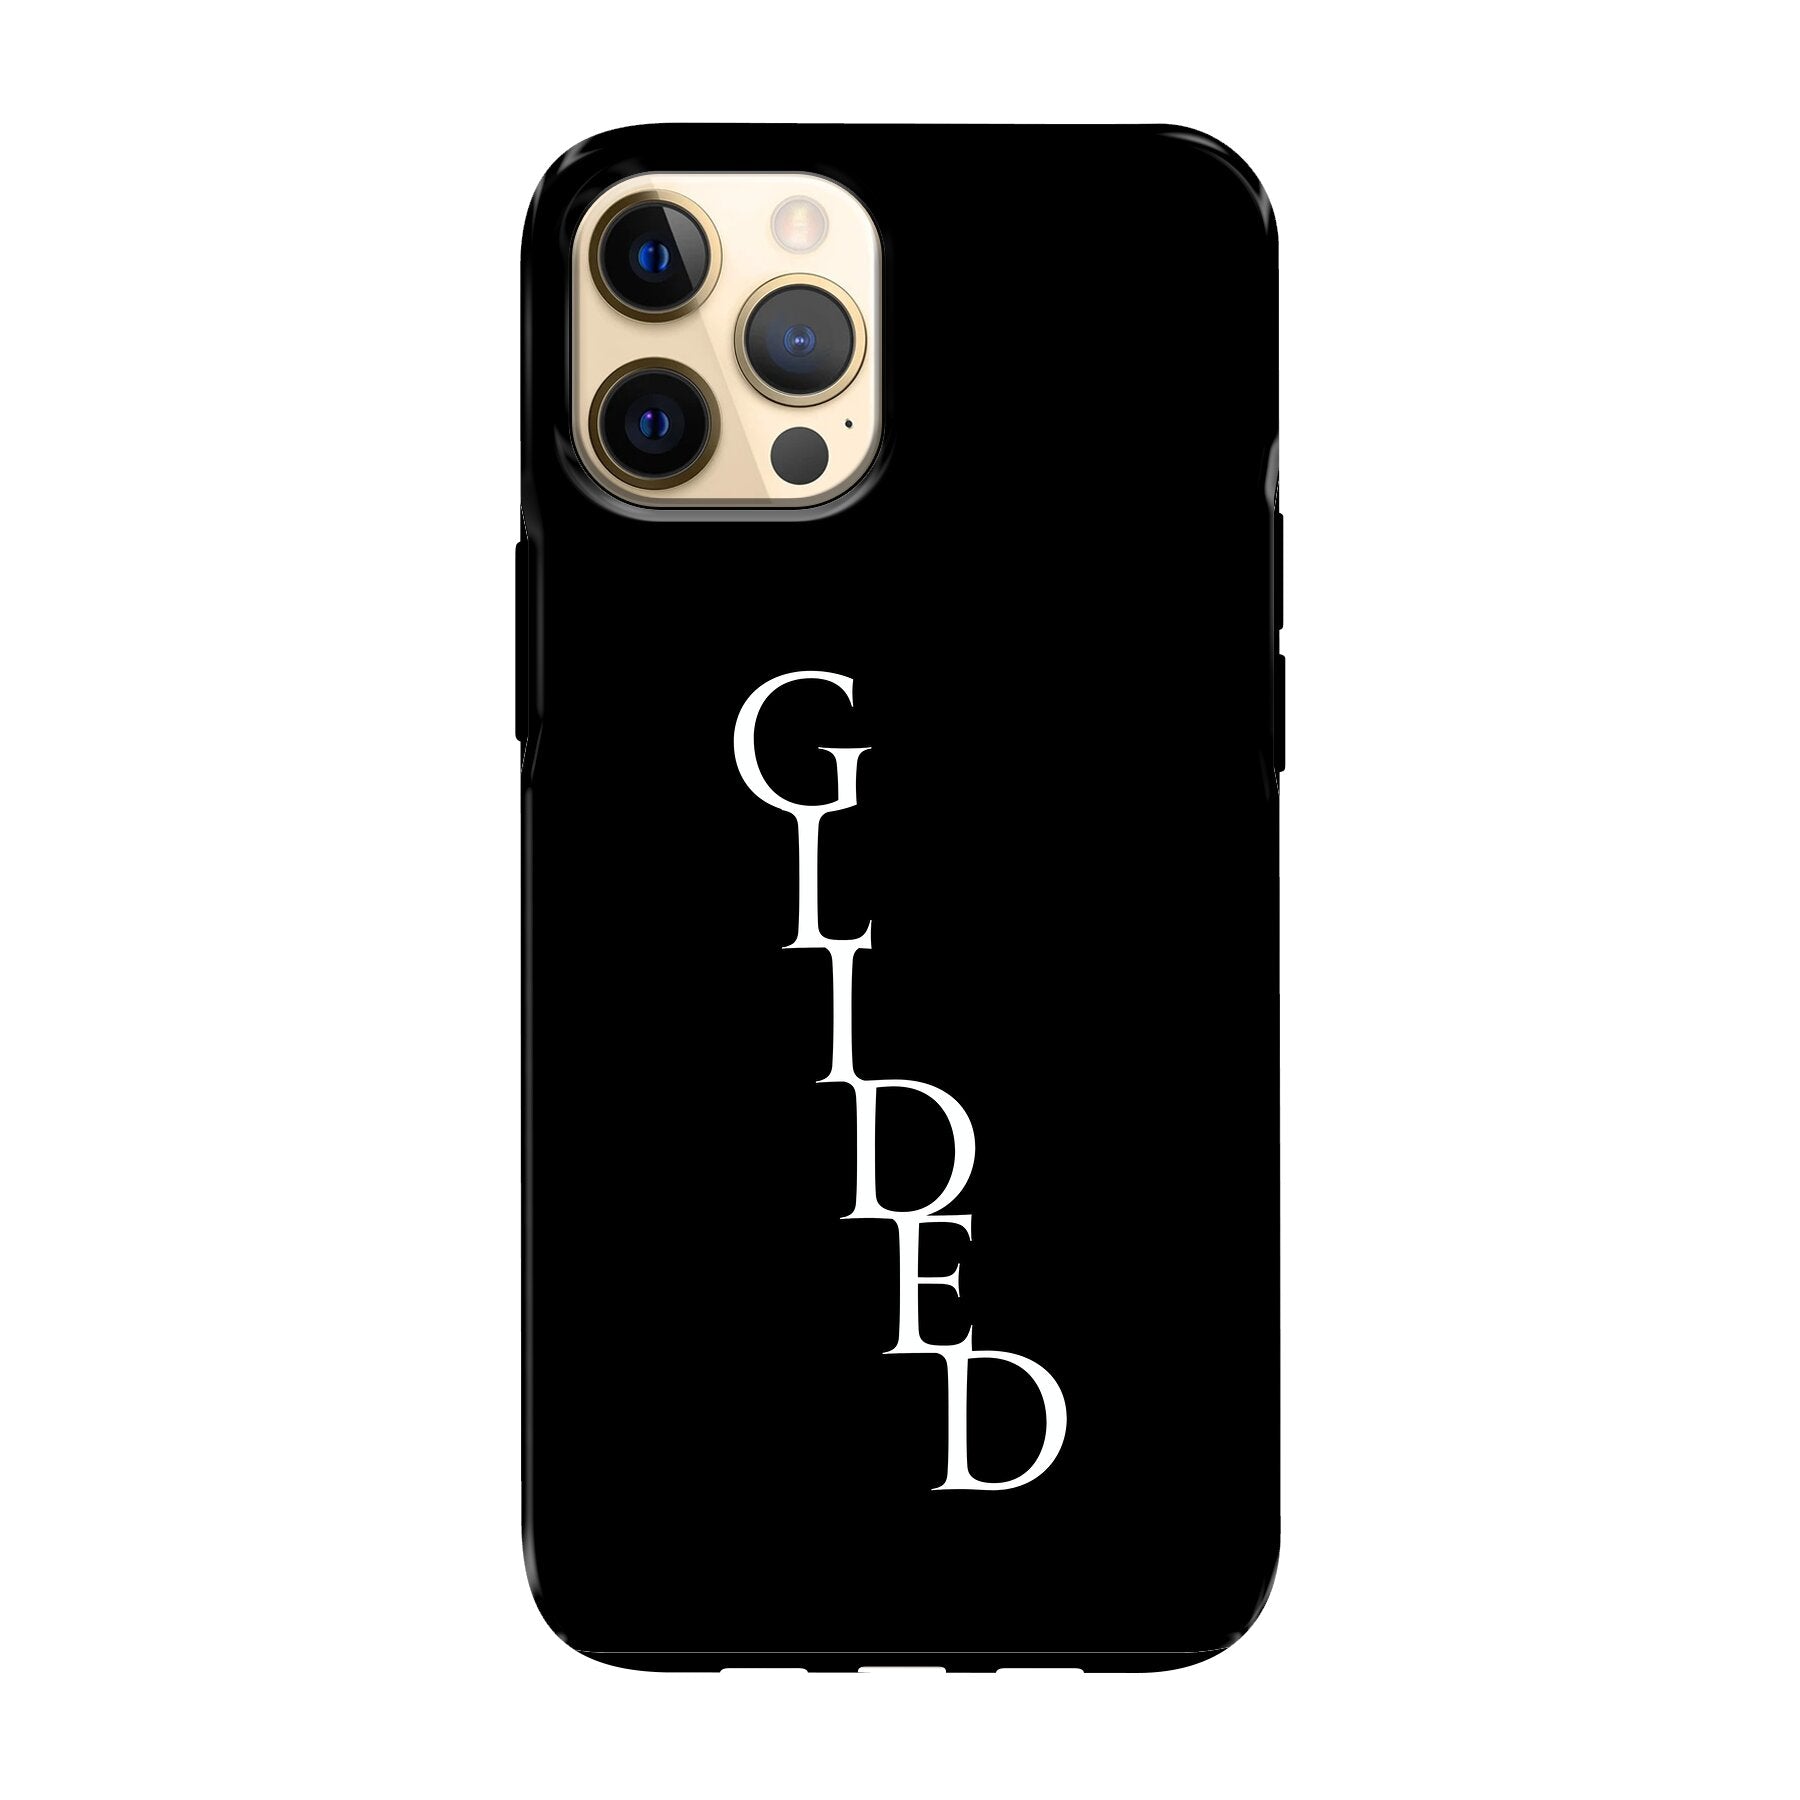 Premium Glided Exclusiv - iPhone 12 Pro Max Handyhülle - Tough case von Glided